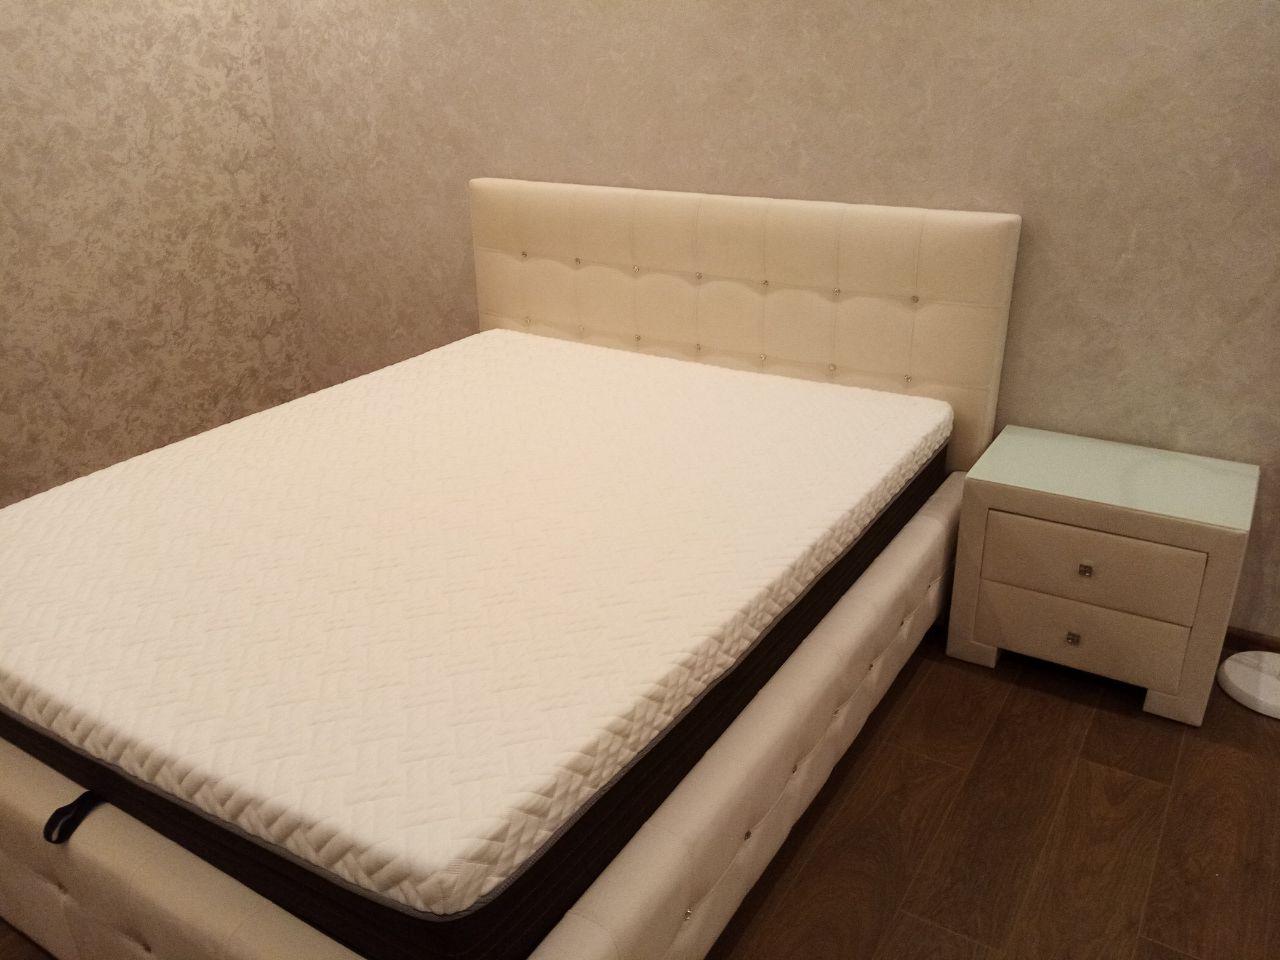 Полутораспальная кровать "Bella" 120 х 200 с ортопедическим основанием цвет sancho 2203